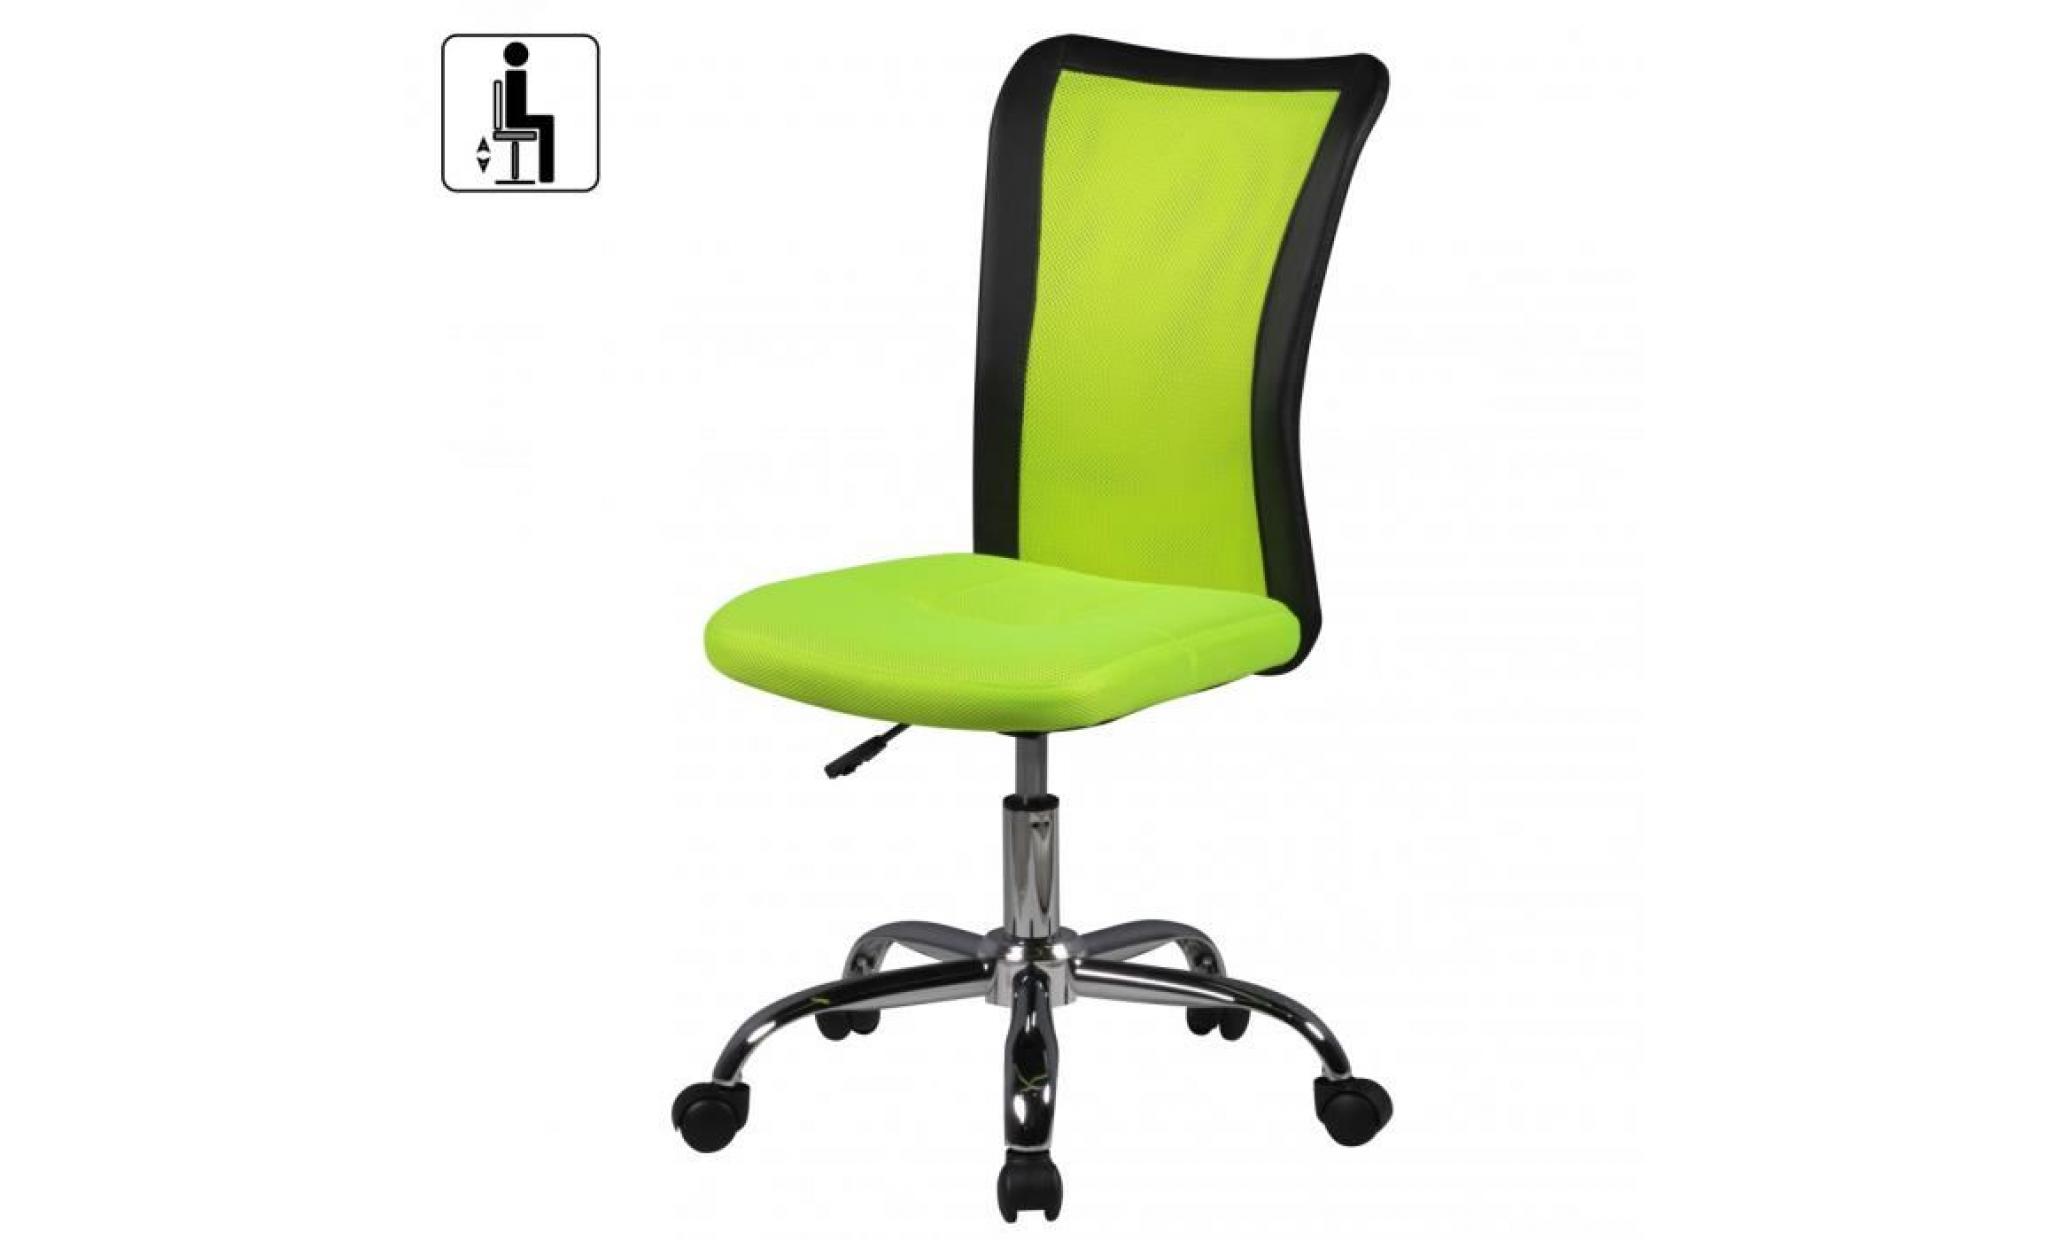 amstyle chaise de bureau enfants lukas vert pour les enfants de 6 avec dossier et roulettes de sol souples chaise jeunesse pas cher